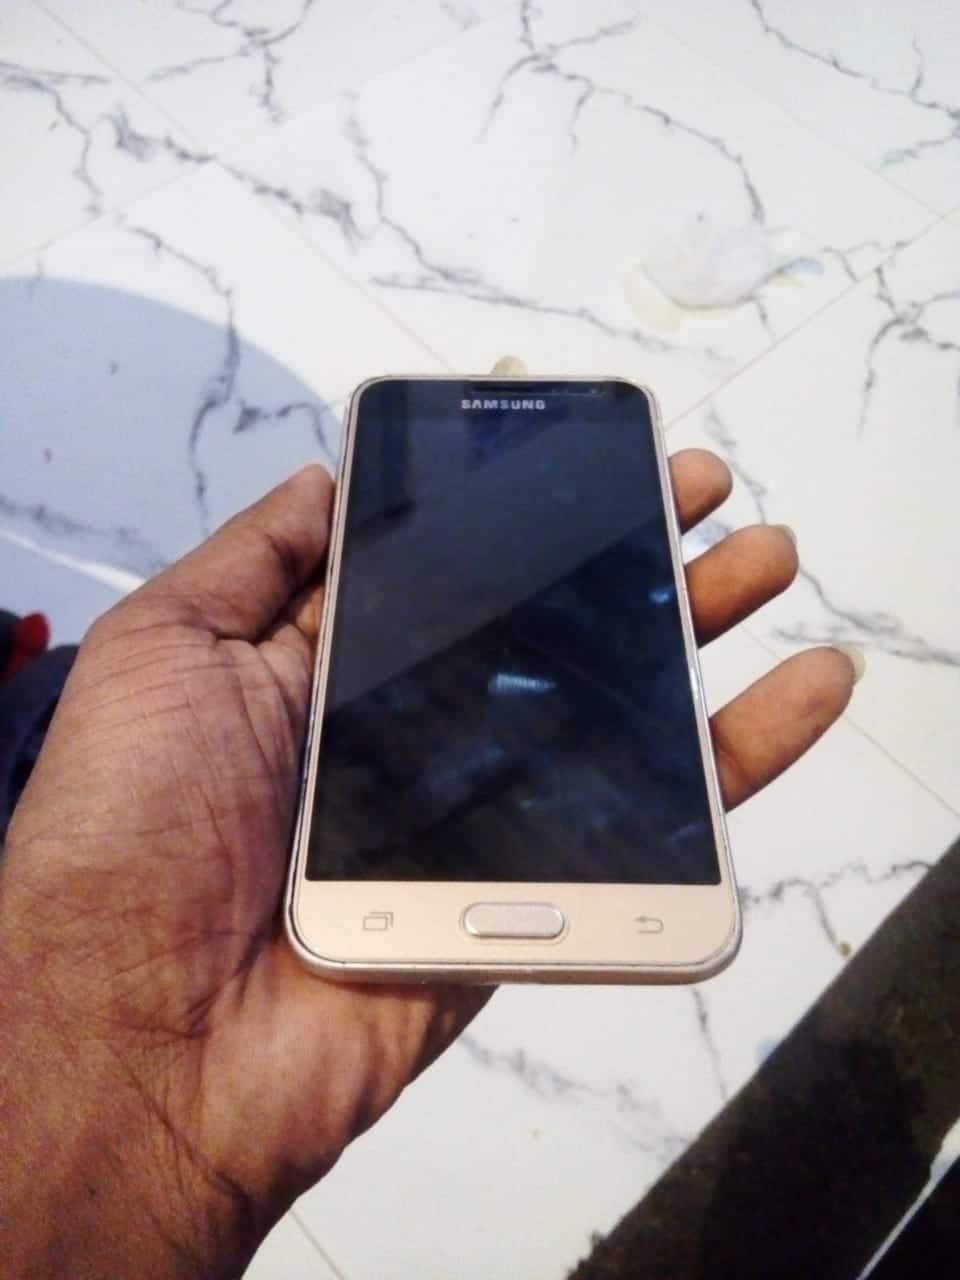 Samsung Galaxy J3 2016 Used